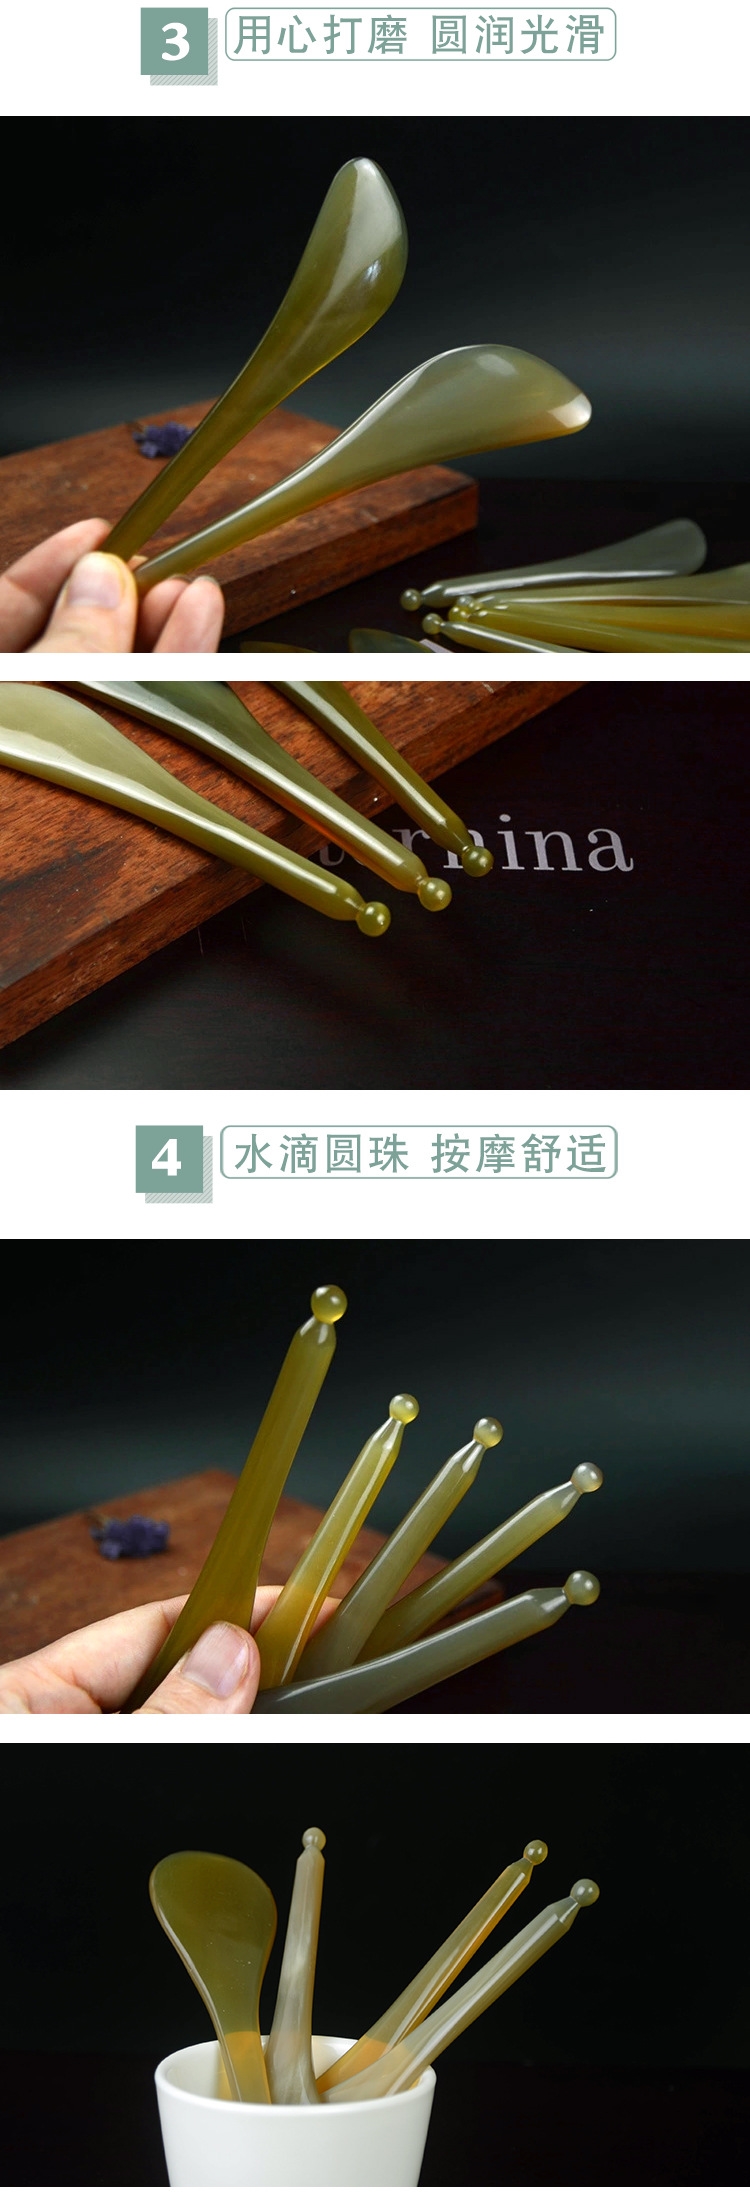 Массажная палочка для точечного массажа оптом из Китая